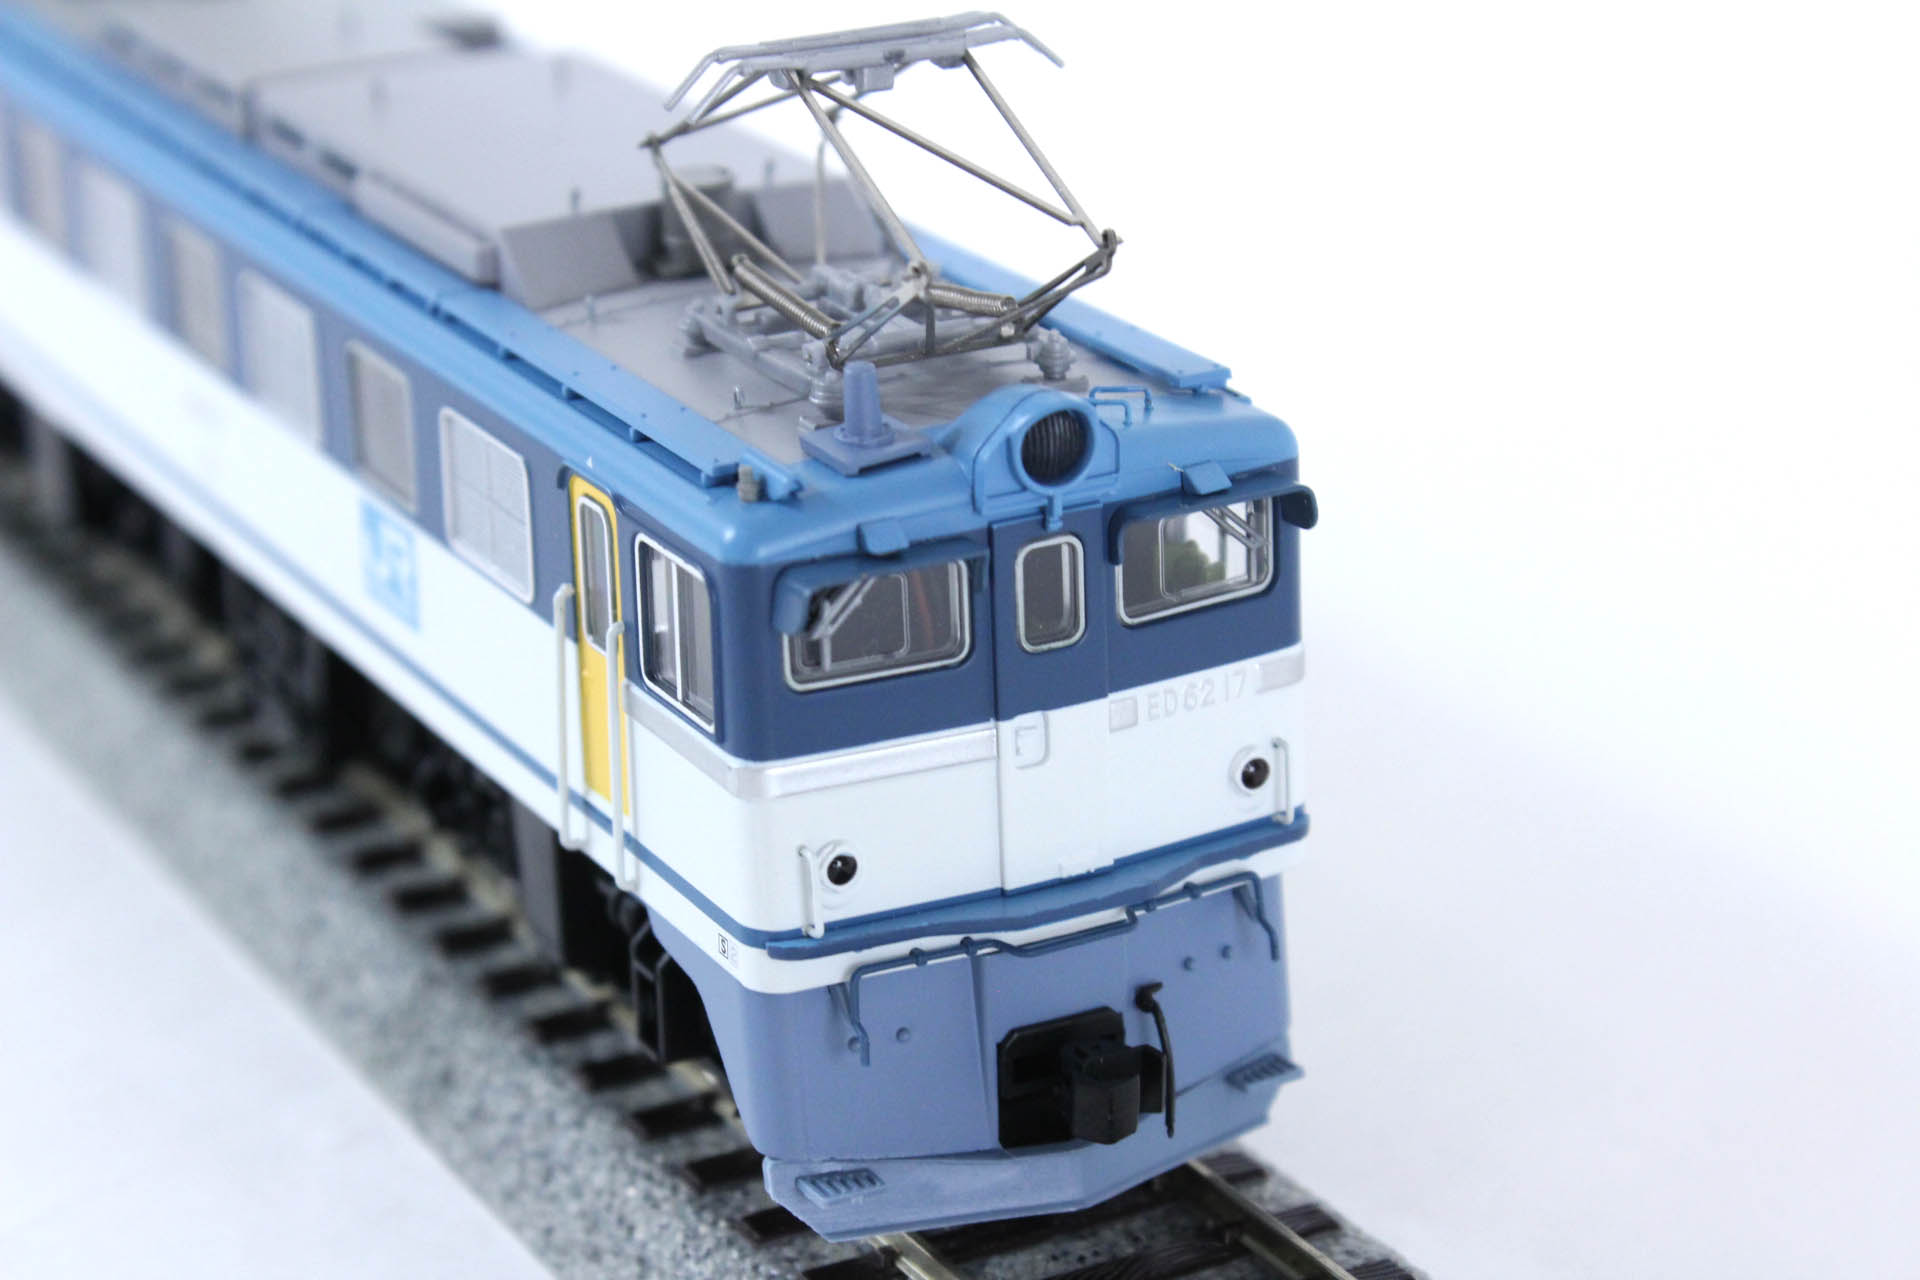 マイクロエース H-7-014 ED62-17・JR貨物色・飯田線 タムタムオンラインショップ札幌店 通販 鉄道模型